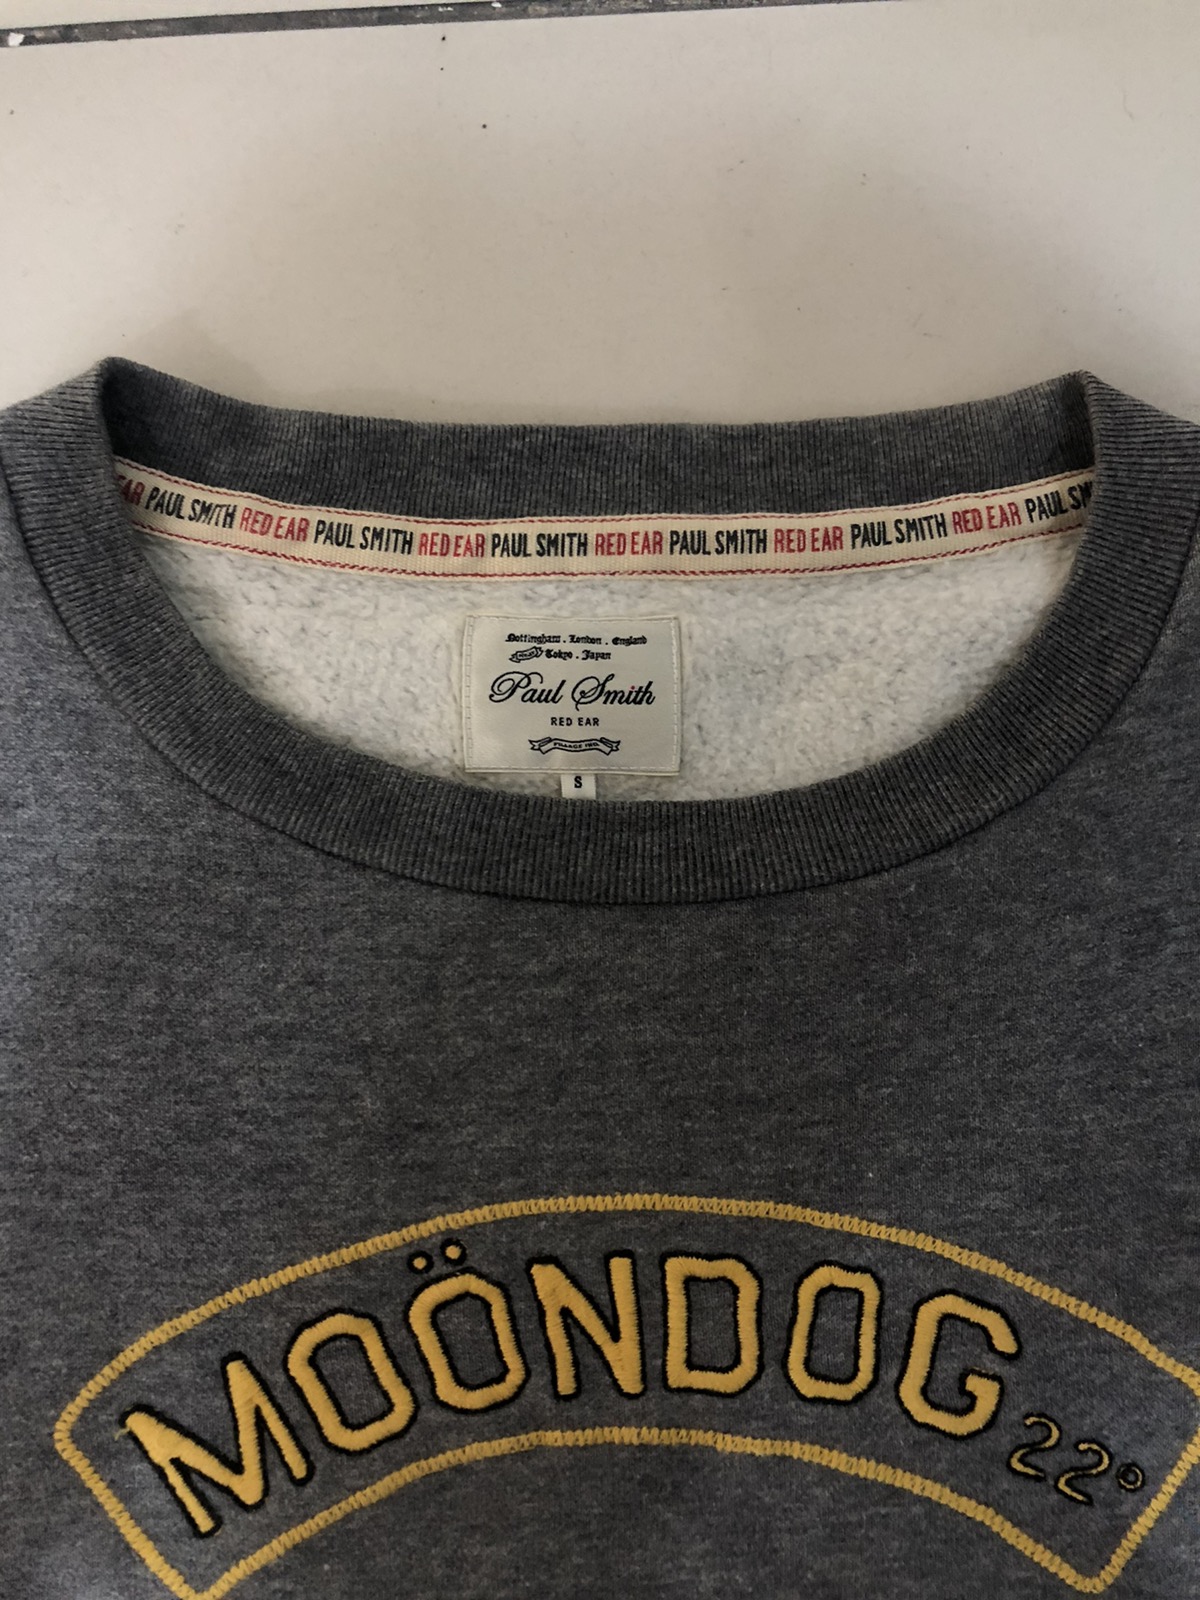 Paul Smith Red Ear Grey “Moondog” Sweatshirt - 6